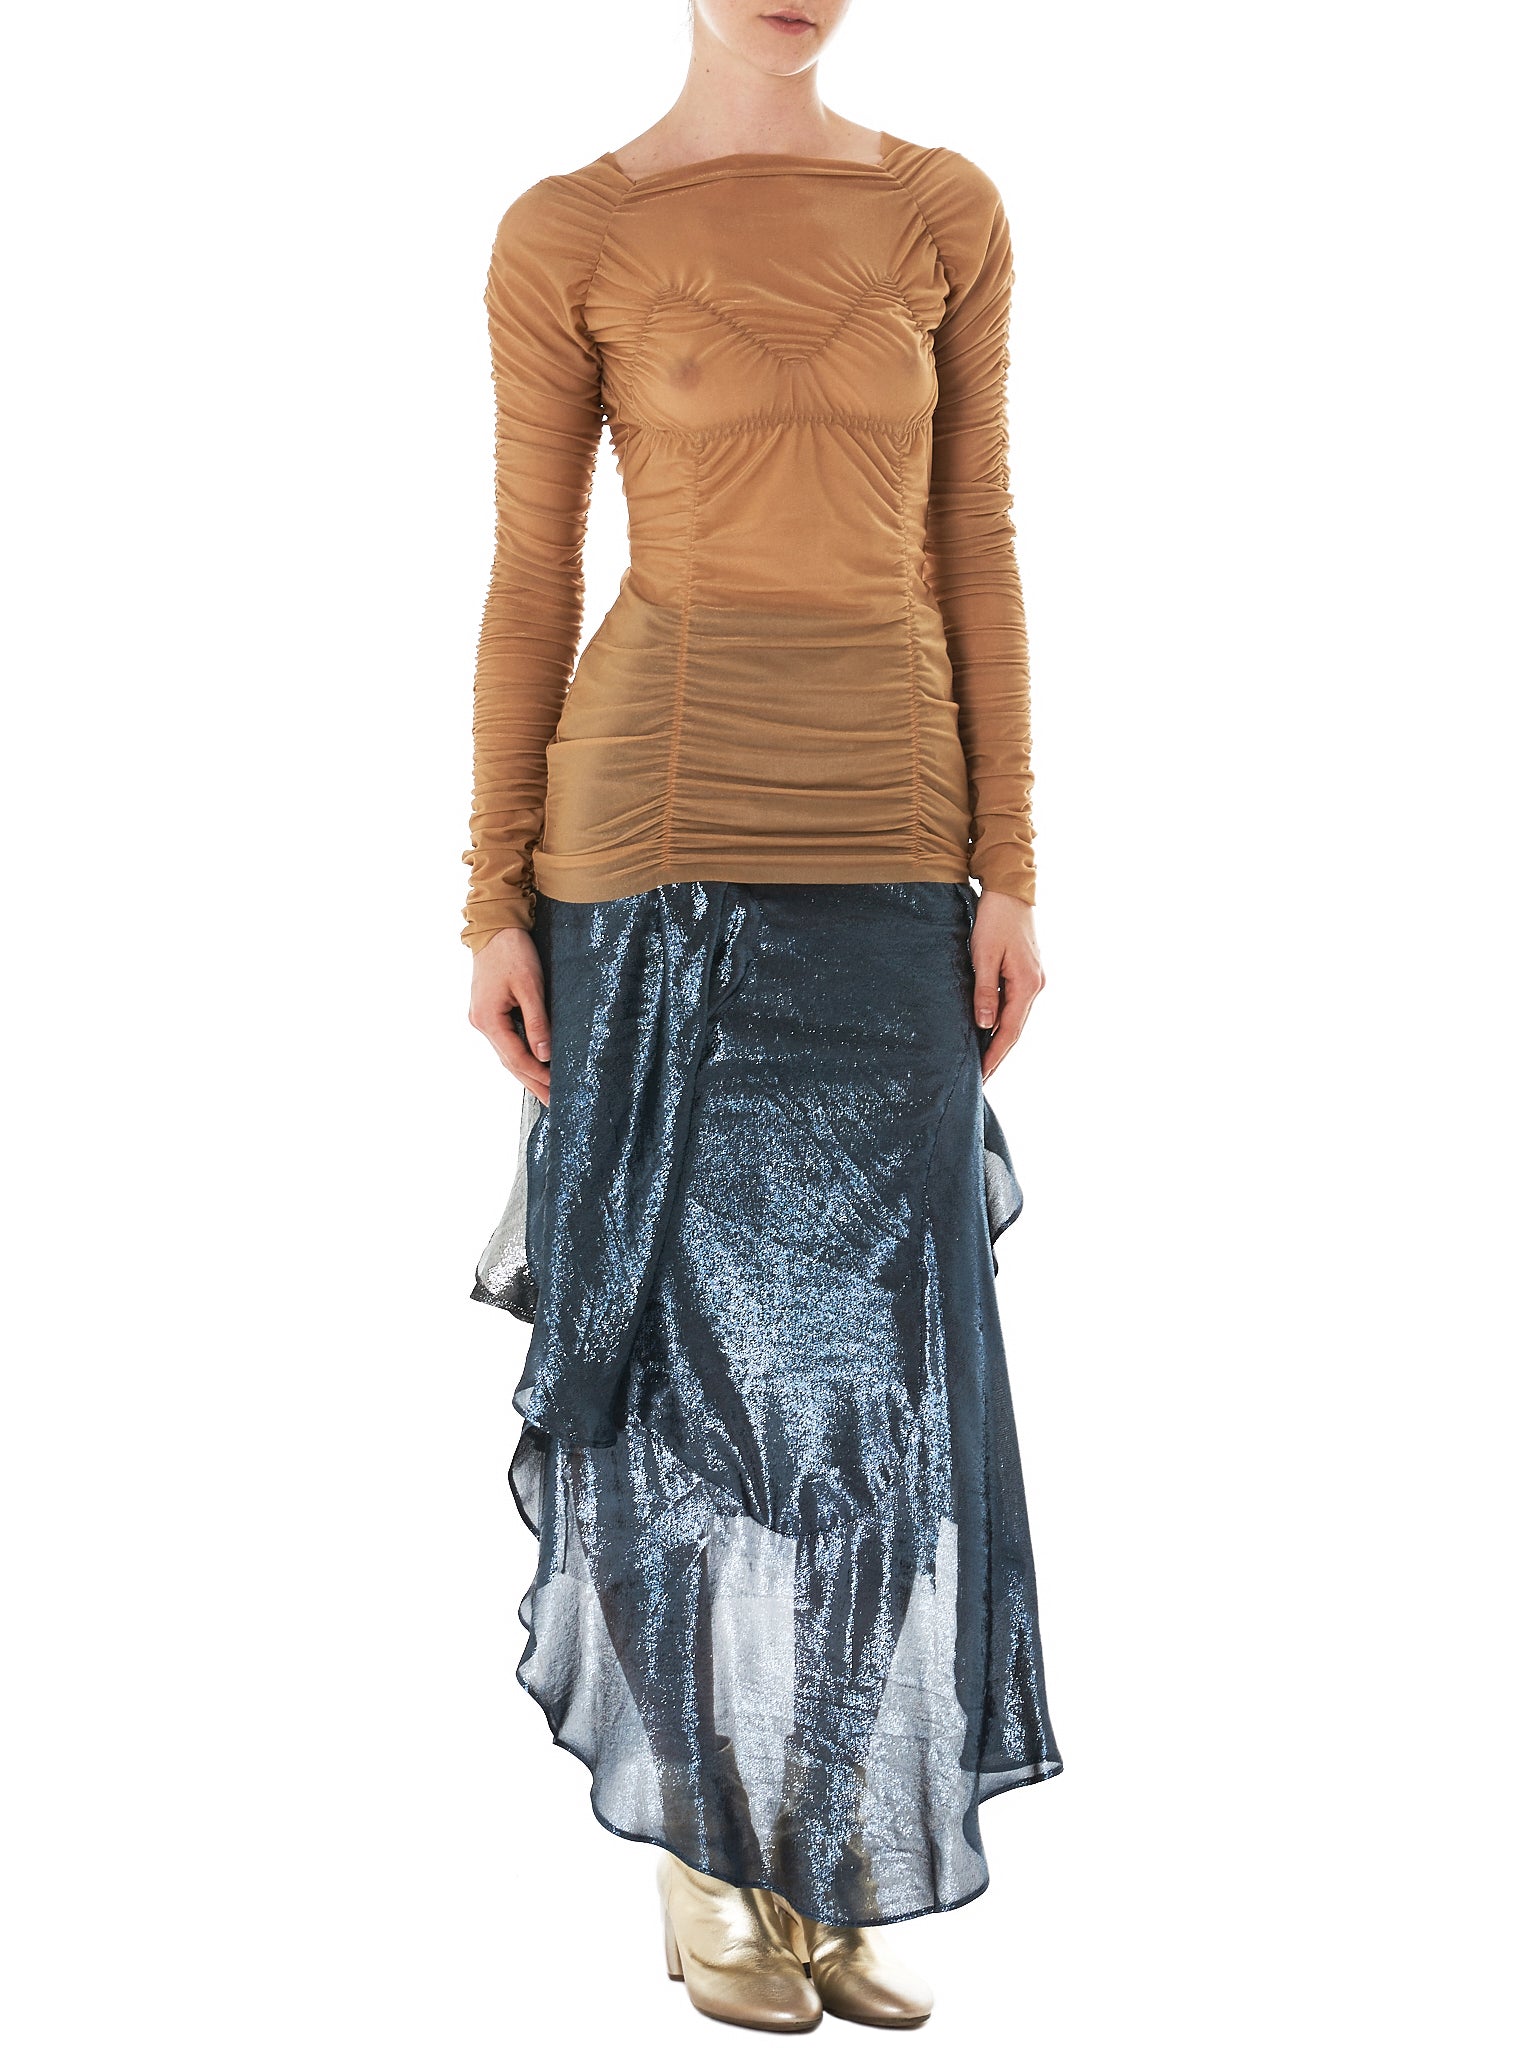 Paula Knorr Drape Skirt - Hlorenzo Style